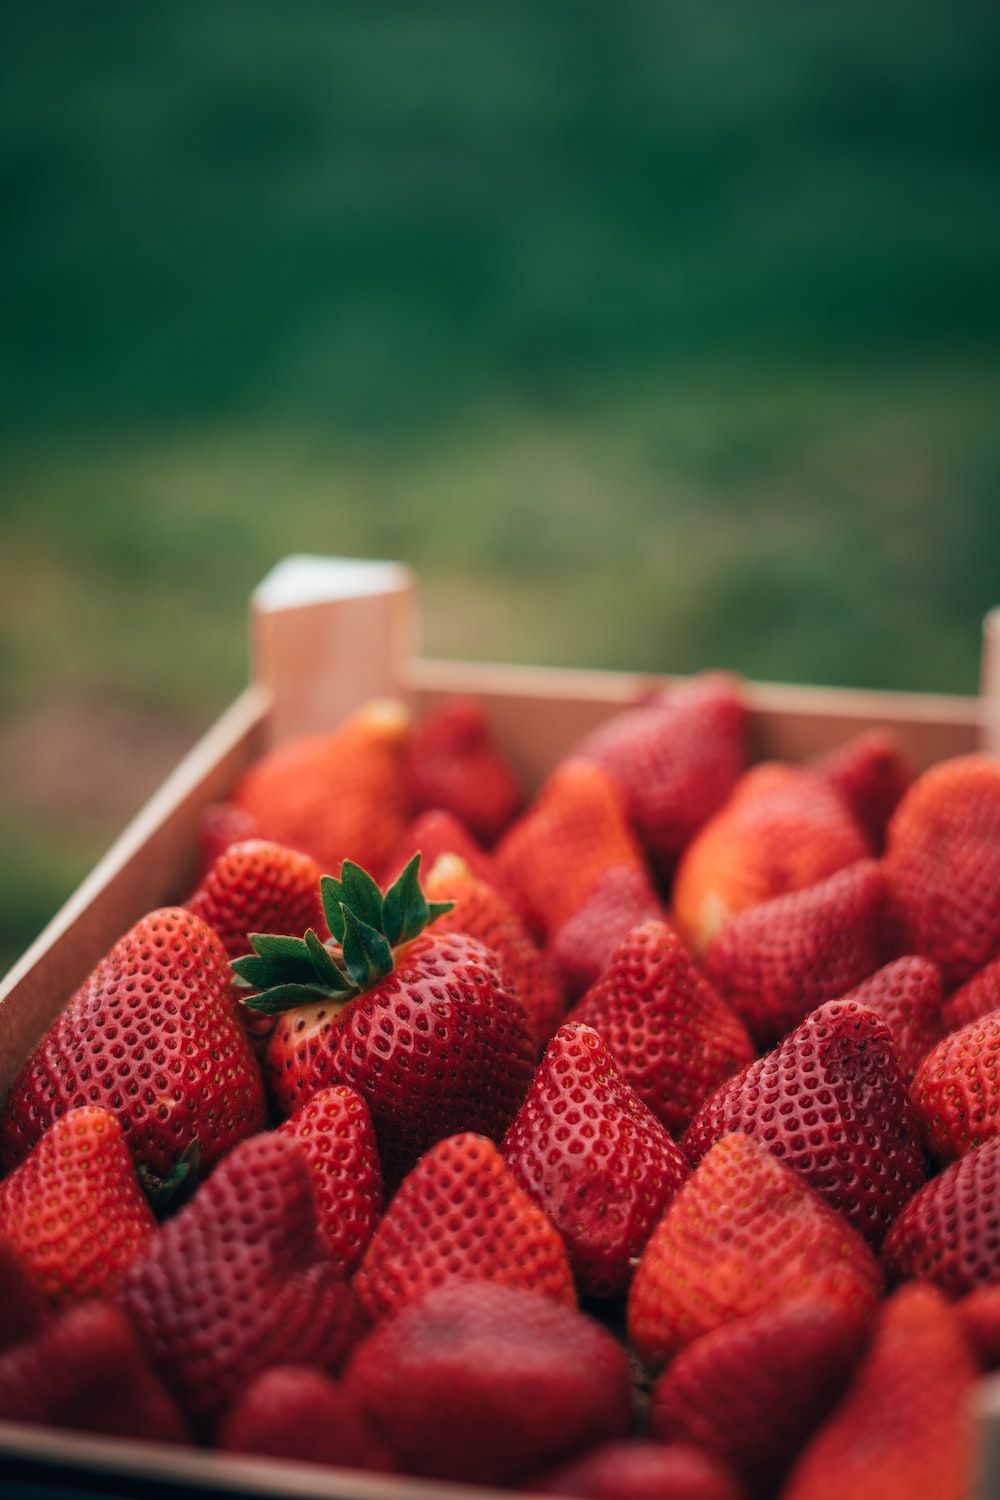  Erdbeeren Hintergrundbild 1000x1500. Erdbeeren Picture. Download Free Image